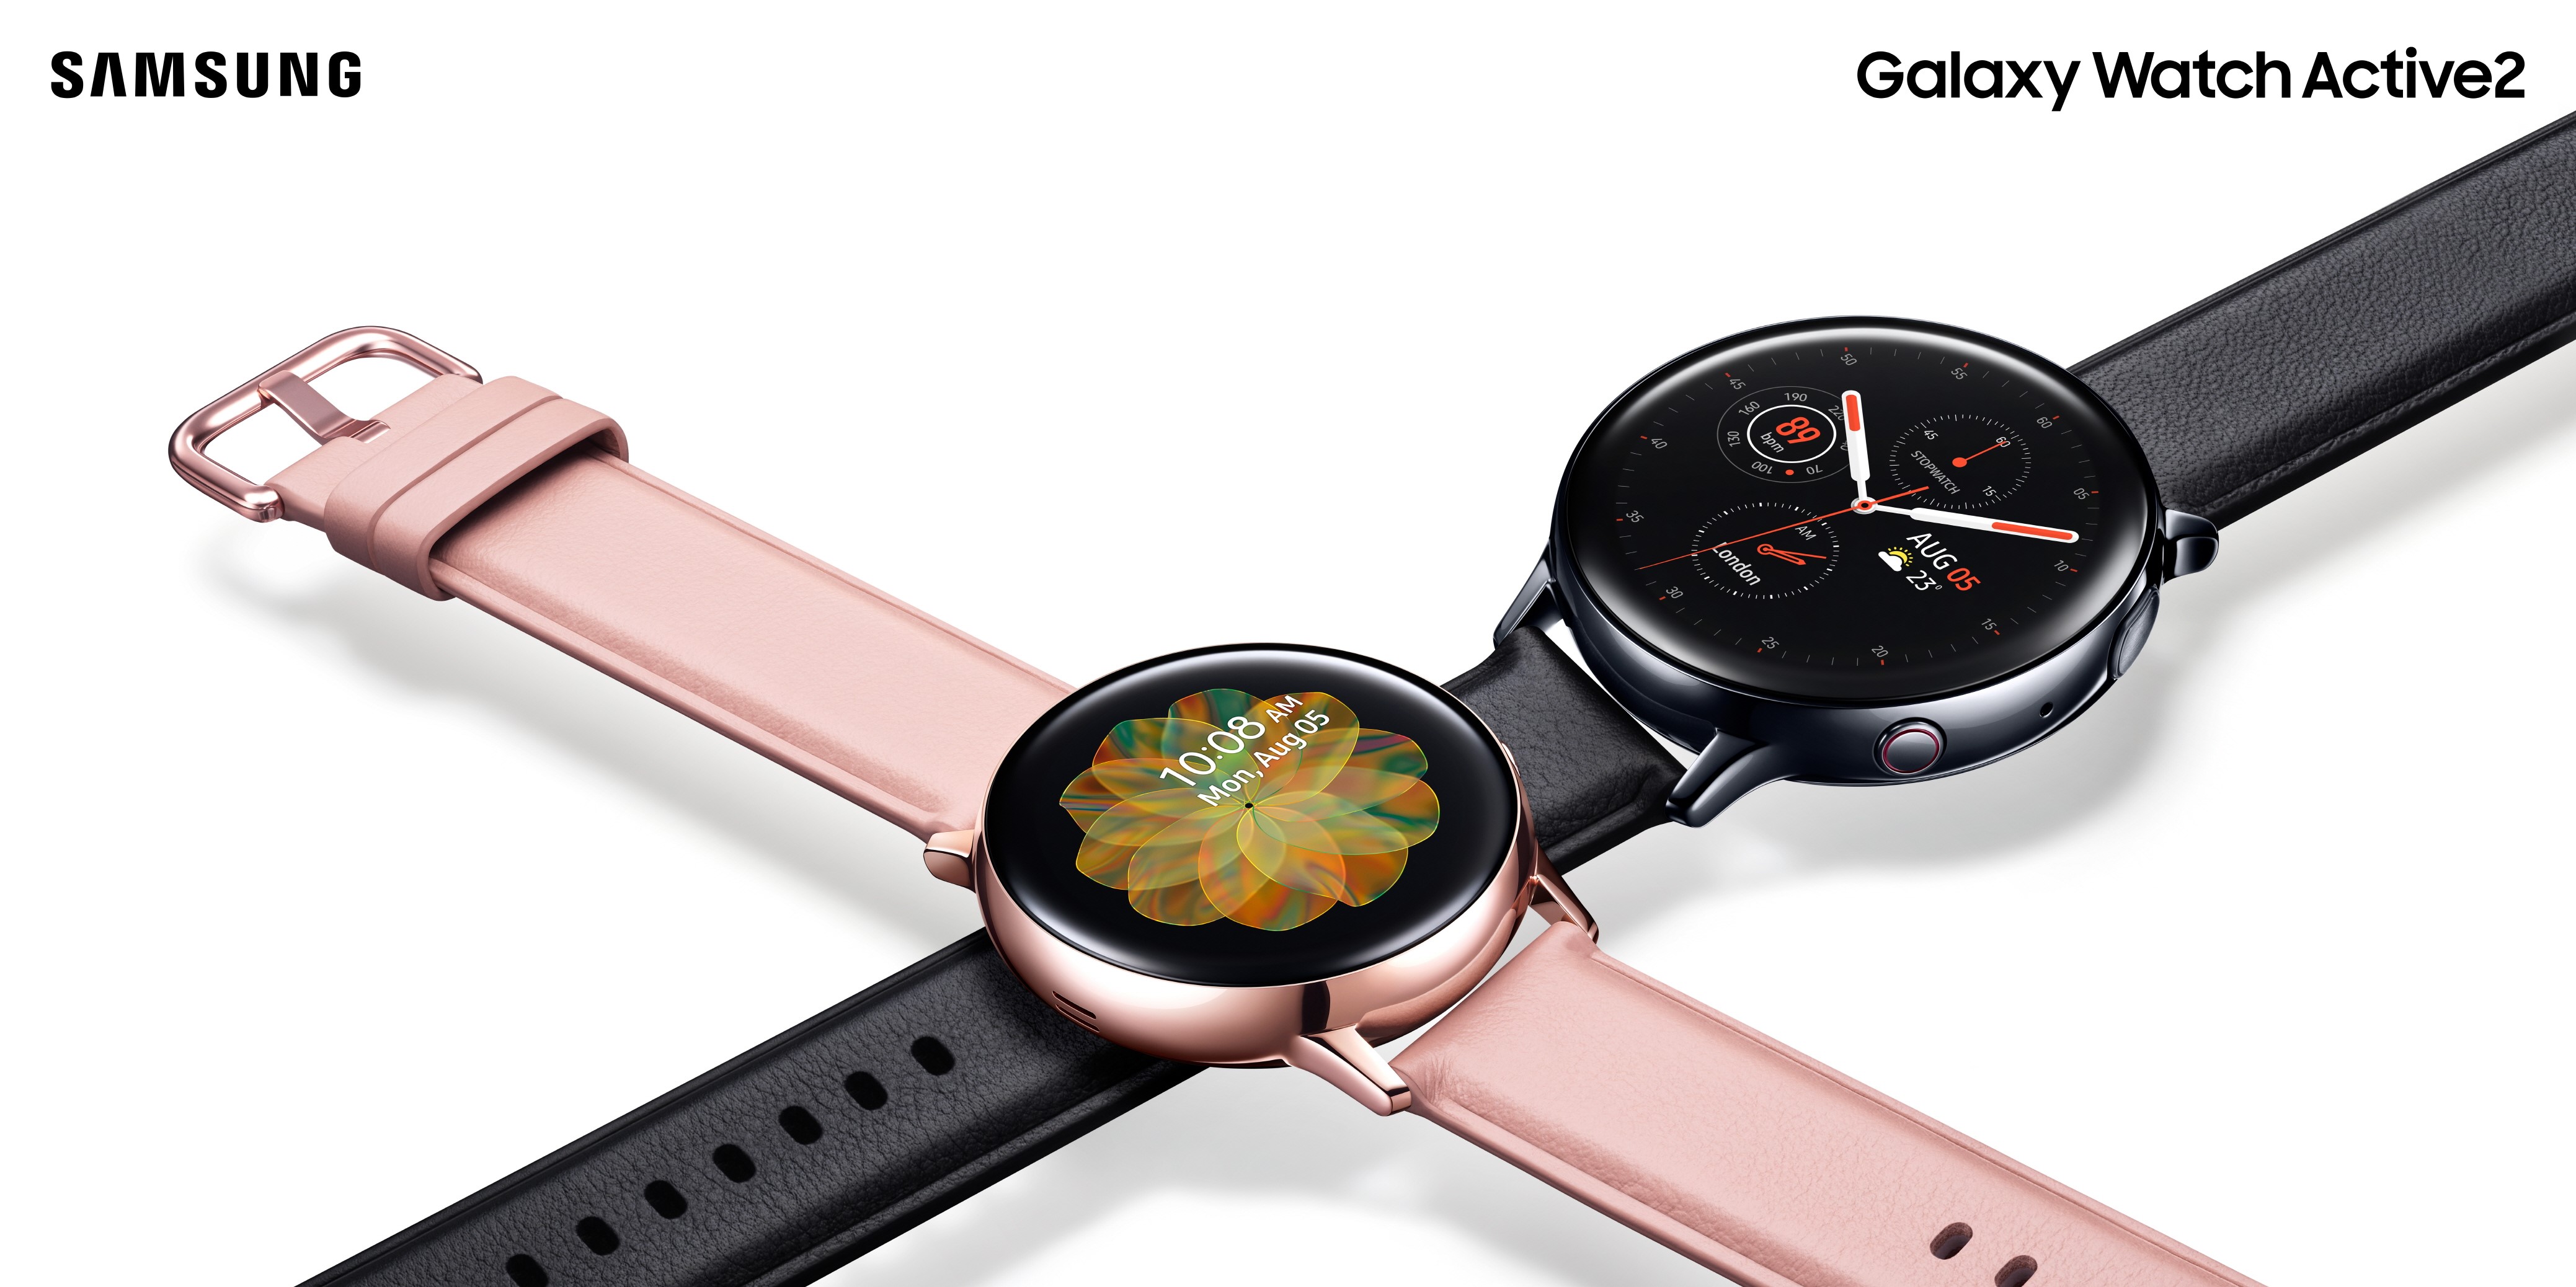 【快訊報報】自訂今天的搭配造型！Samsung Galaxy Watch Active 2 搭載 My Style 色彩擷取 任選錶面搭配專屬風格 - 智慧手錶 - 科技狗 3C DOG